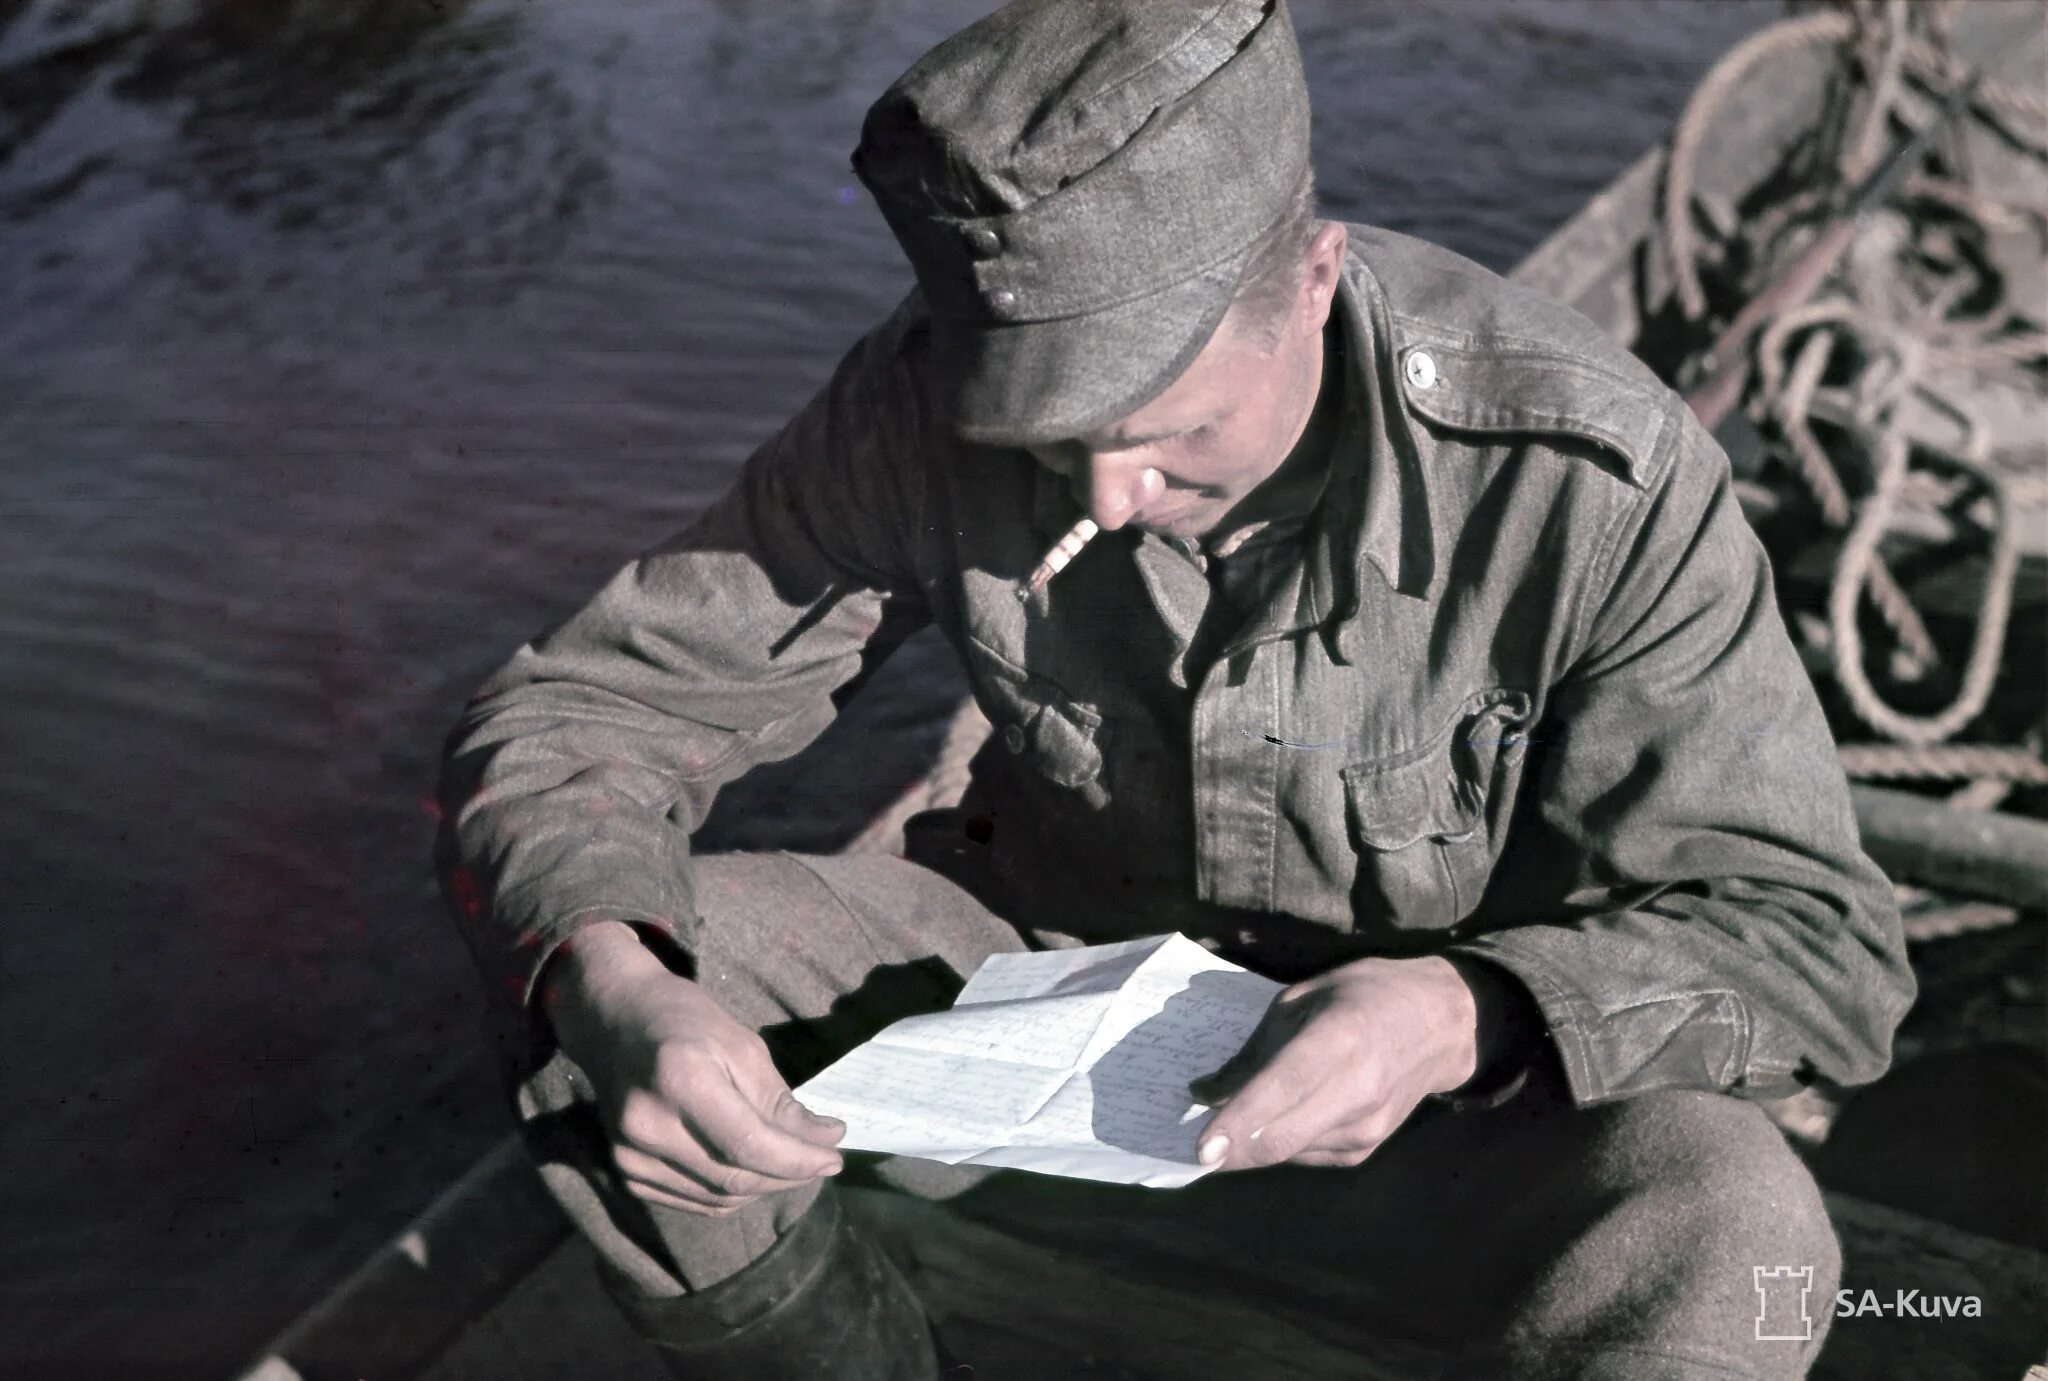 Читать про солдат. Солдат читает письмо. Солдат читает книгу. Солдат читает письмо фото. Современный солдат читает письмо.